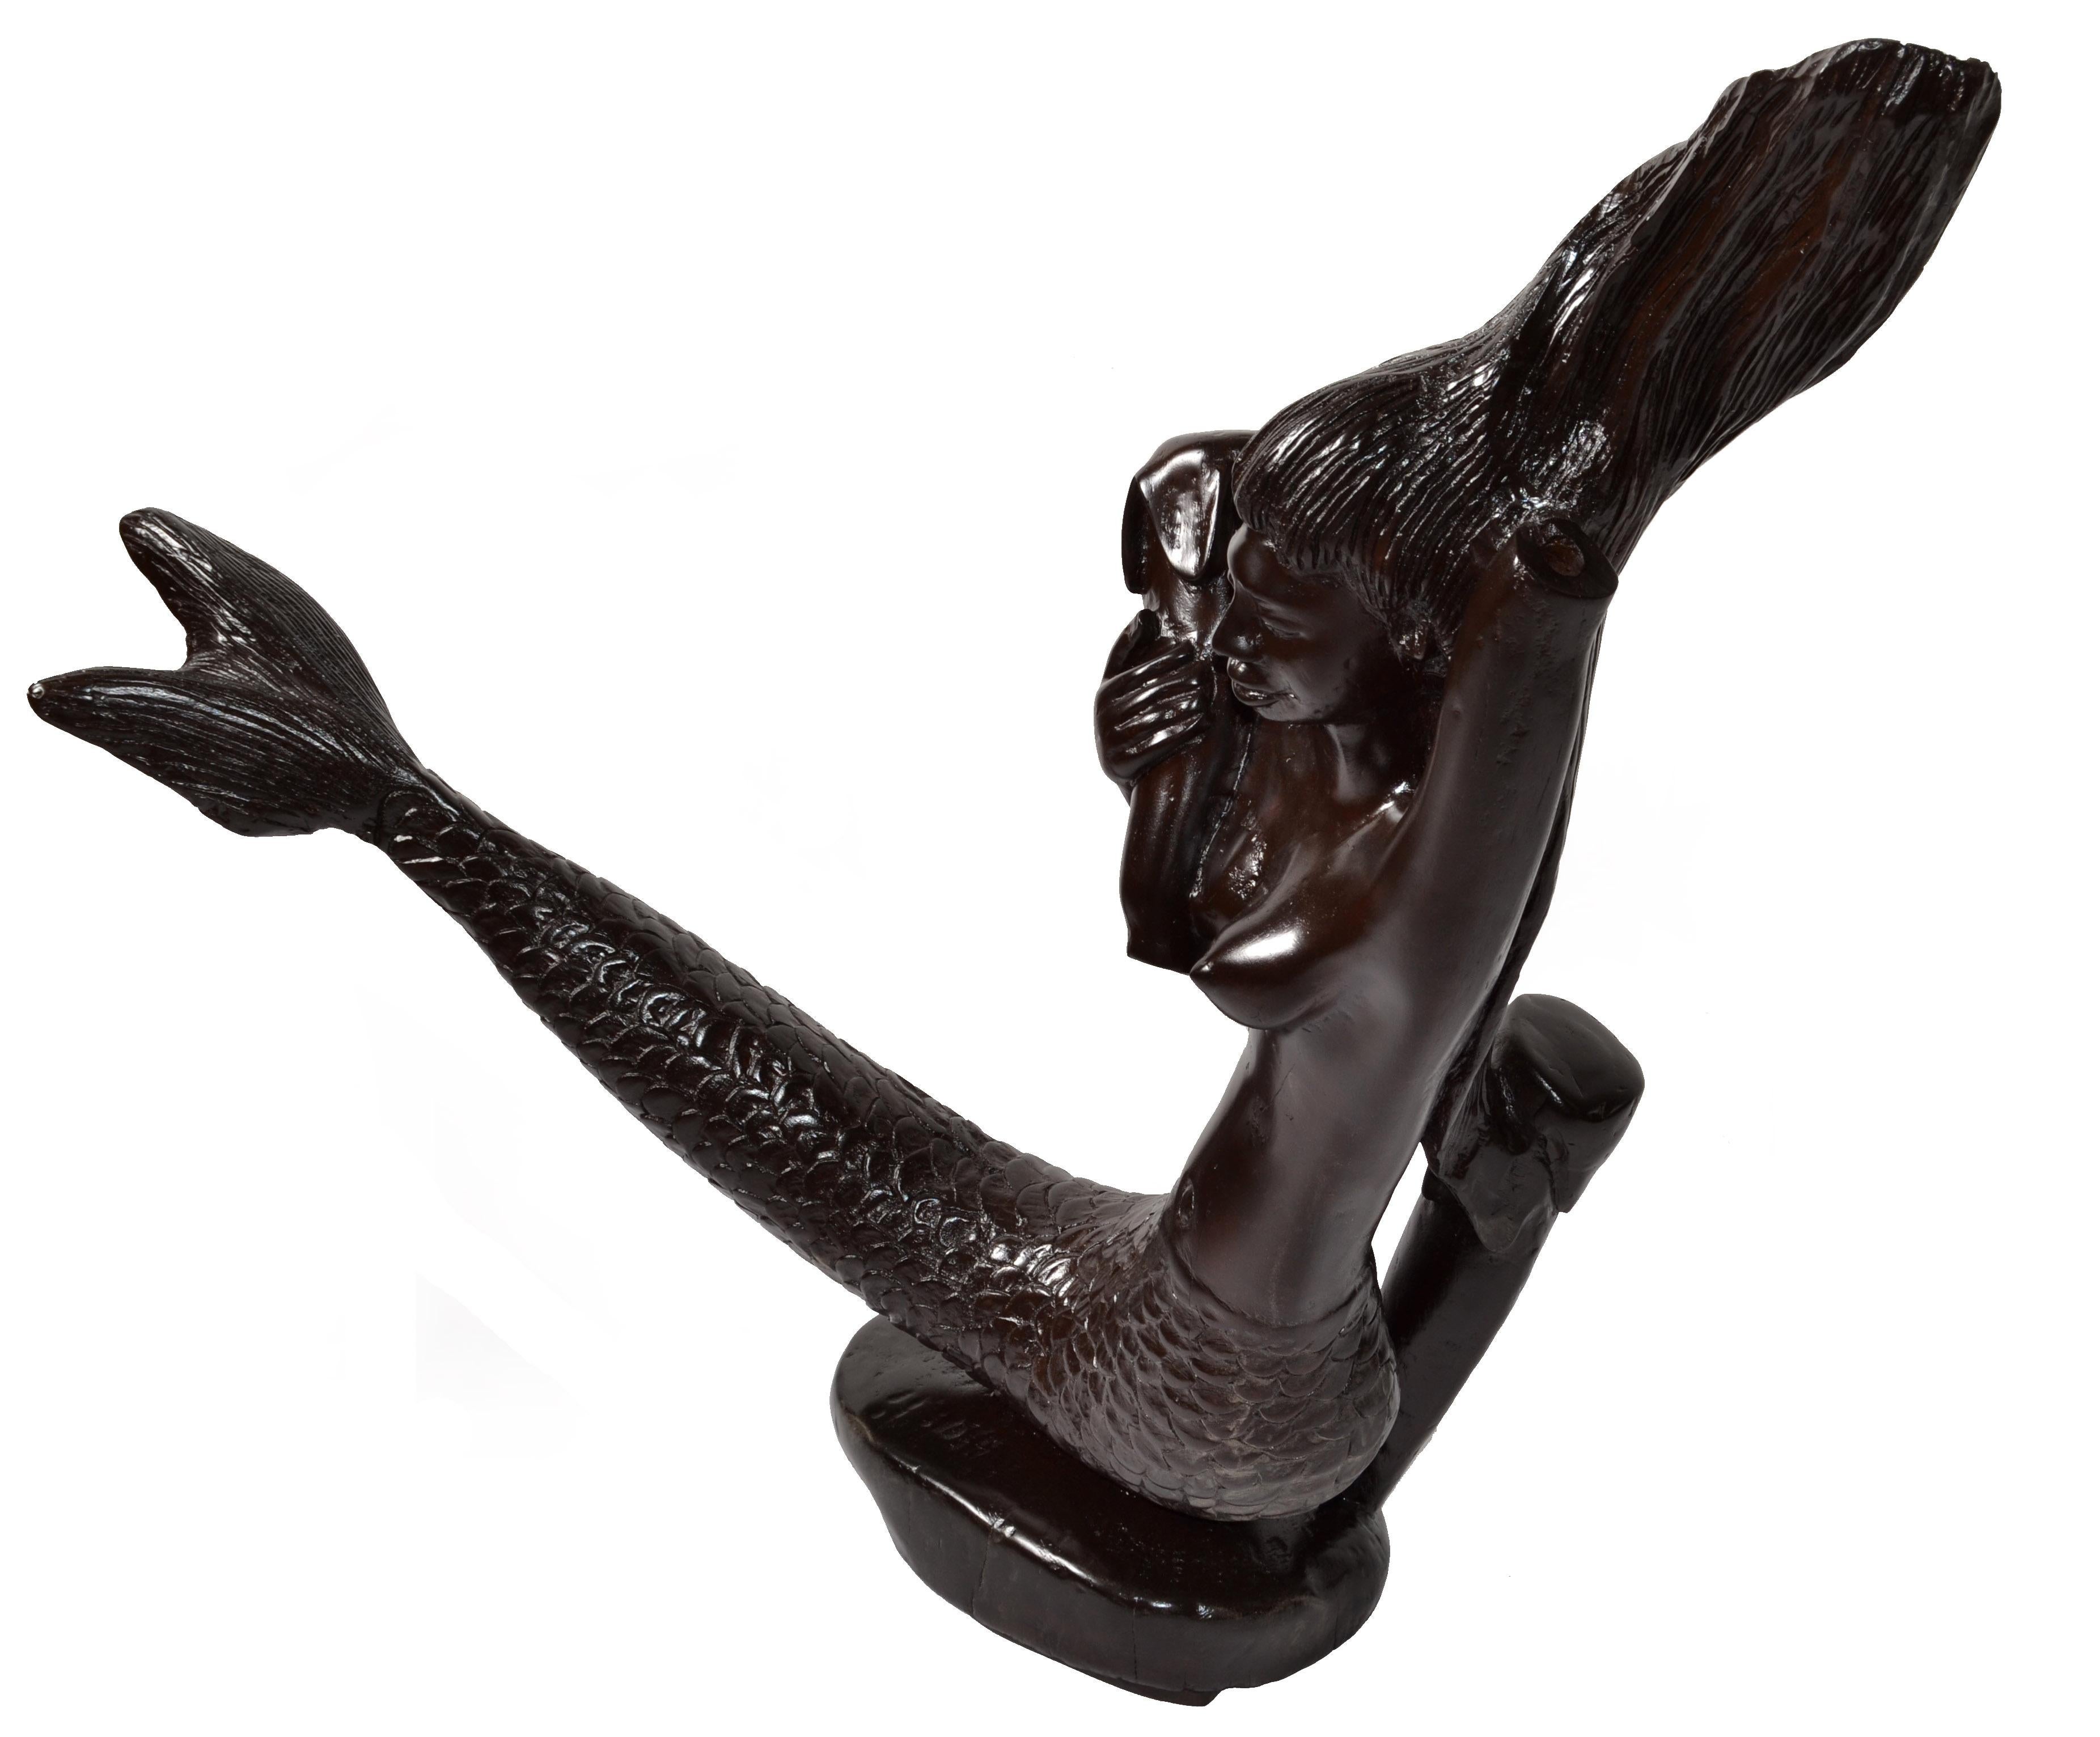 Charmante sculpture de sirène en acajou, unique en son genre, datant de la fin du 19e siècle, sculptée à la main dans une seule pièce de bois massif.
Très détaillées les sculptures texturées des cheveux et de la queue, et la sensibilité du sculpteur